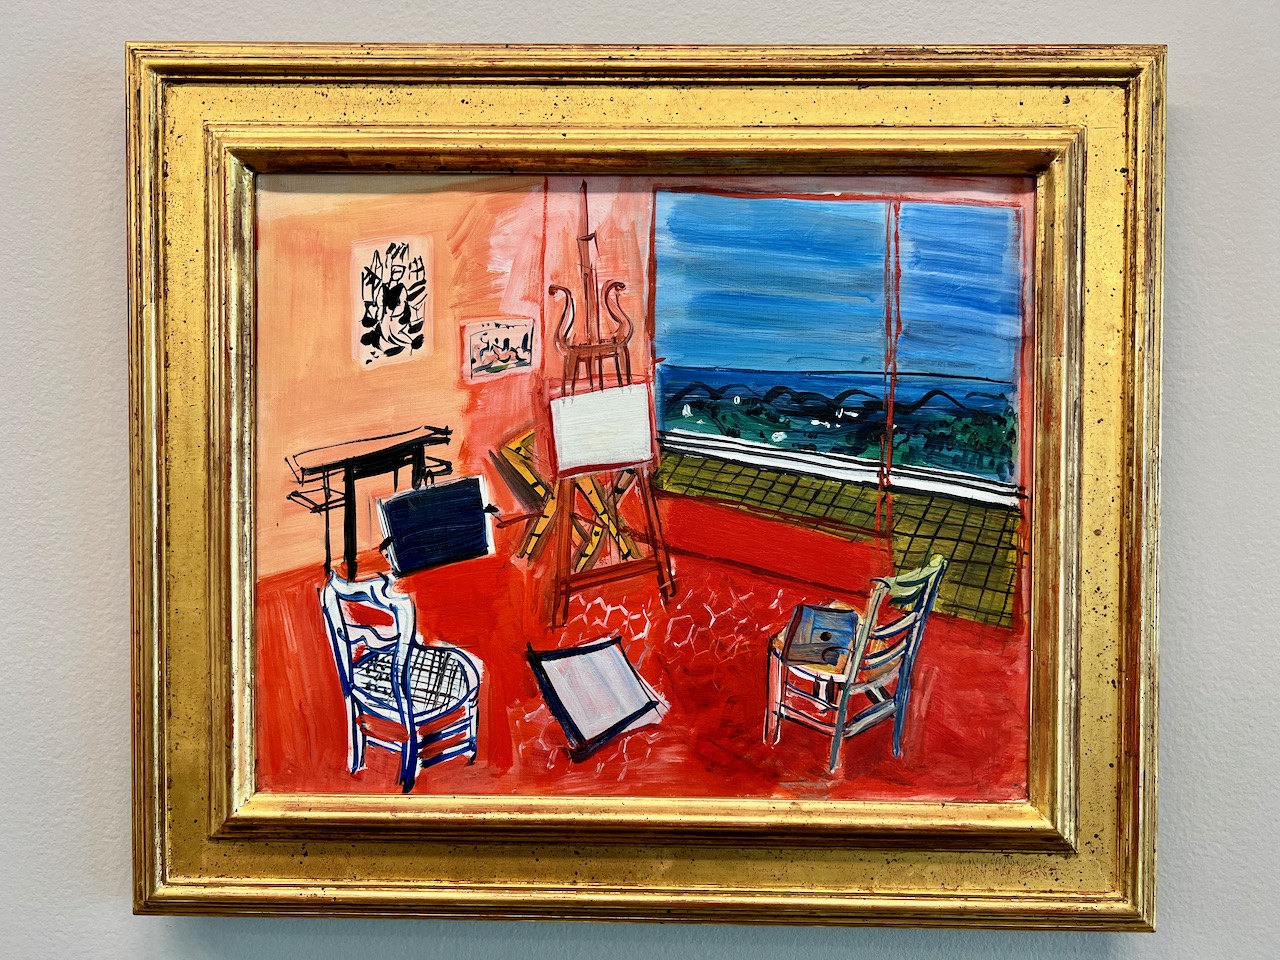 Un atelier de peinture, peint par Raoul Dufy